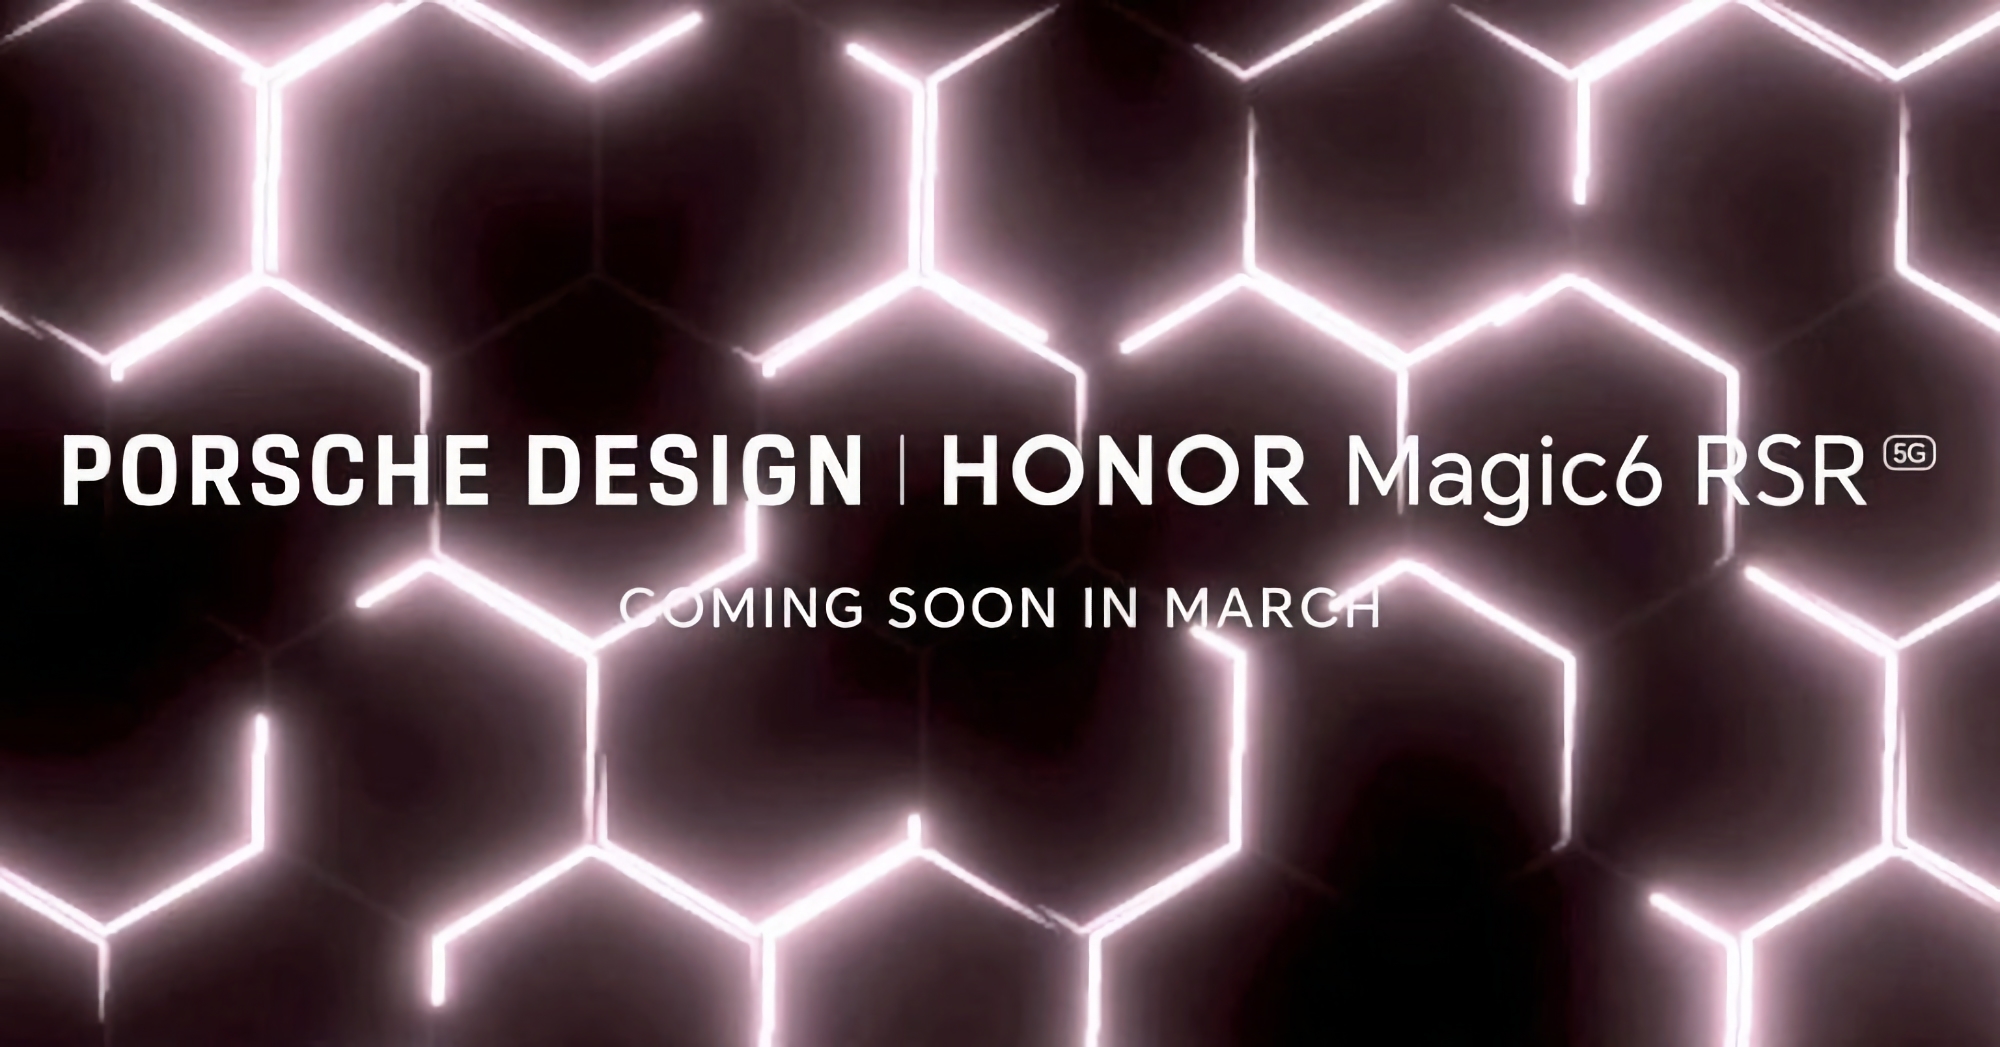 Honor afslører Magic 6 RSR Porsche Design i marts